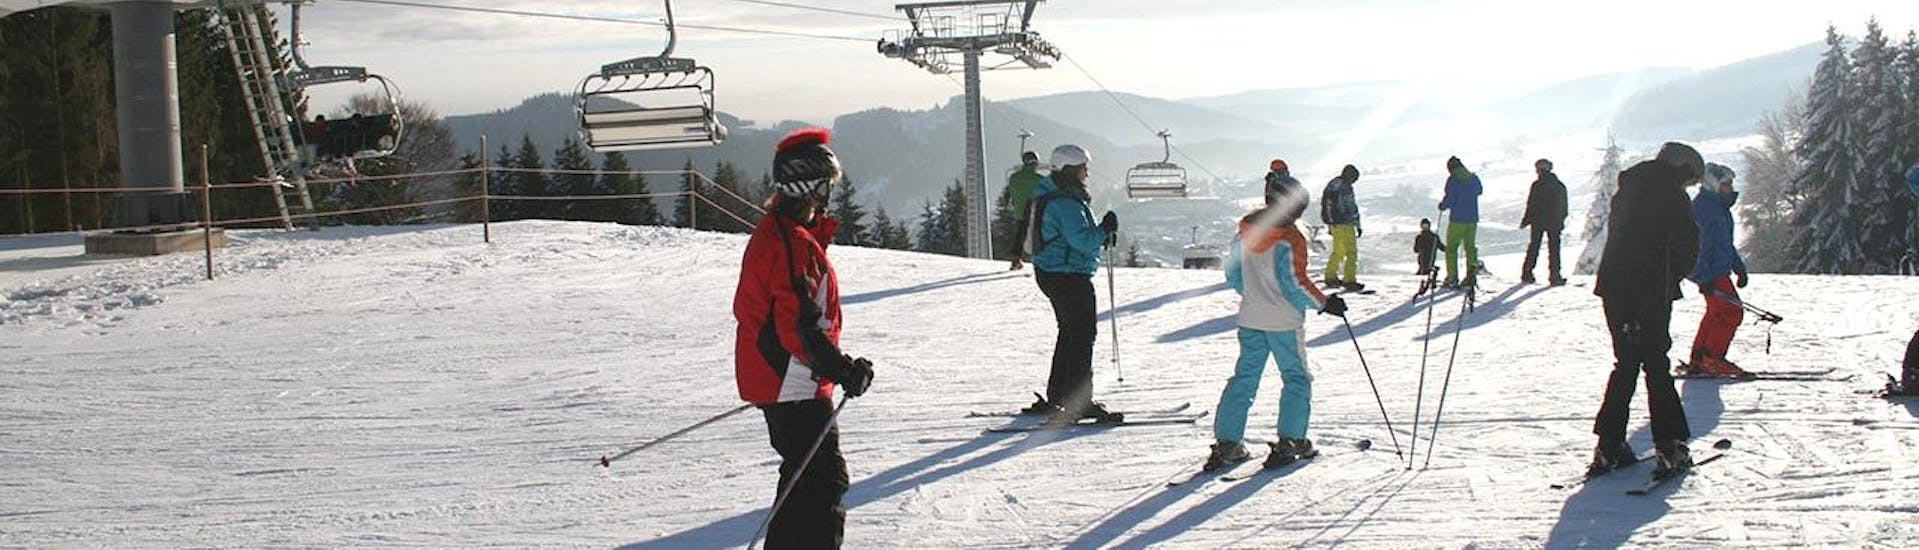 Lezioni di sci per bambini a partire da 11 anni principianti assoluti.